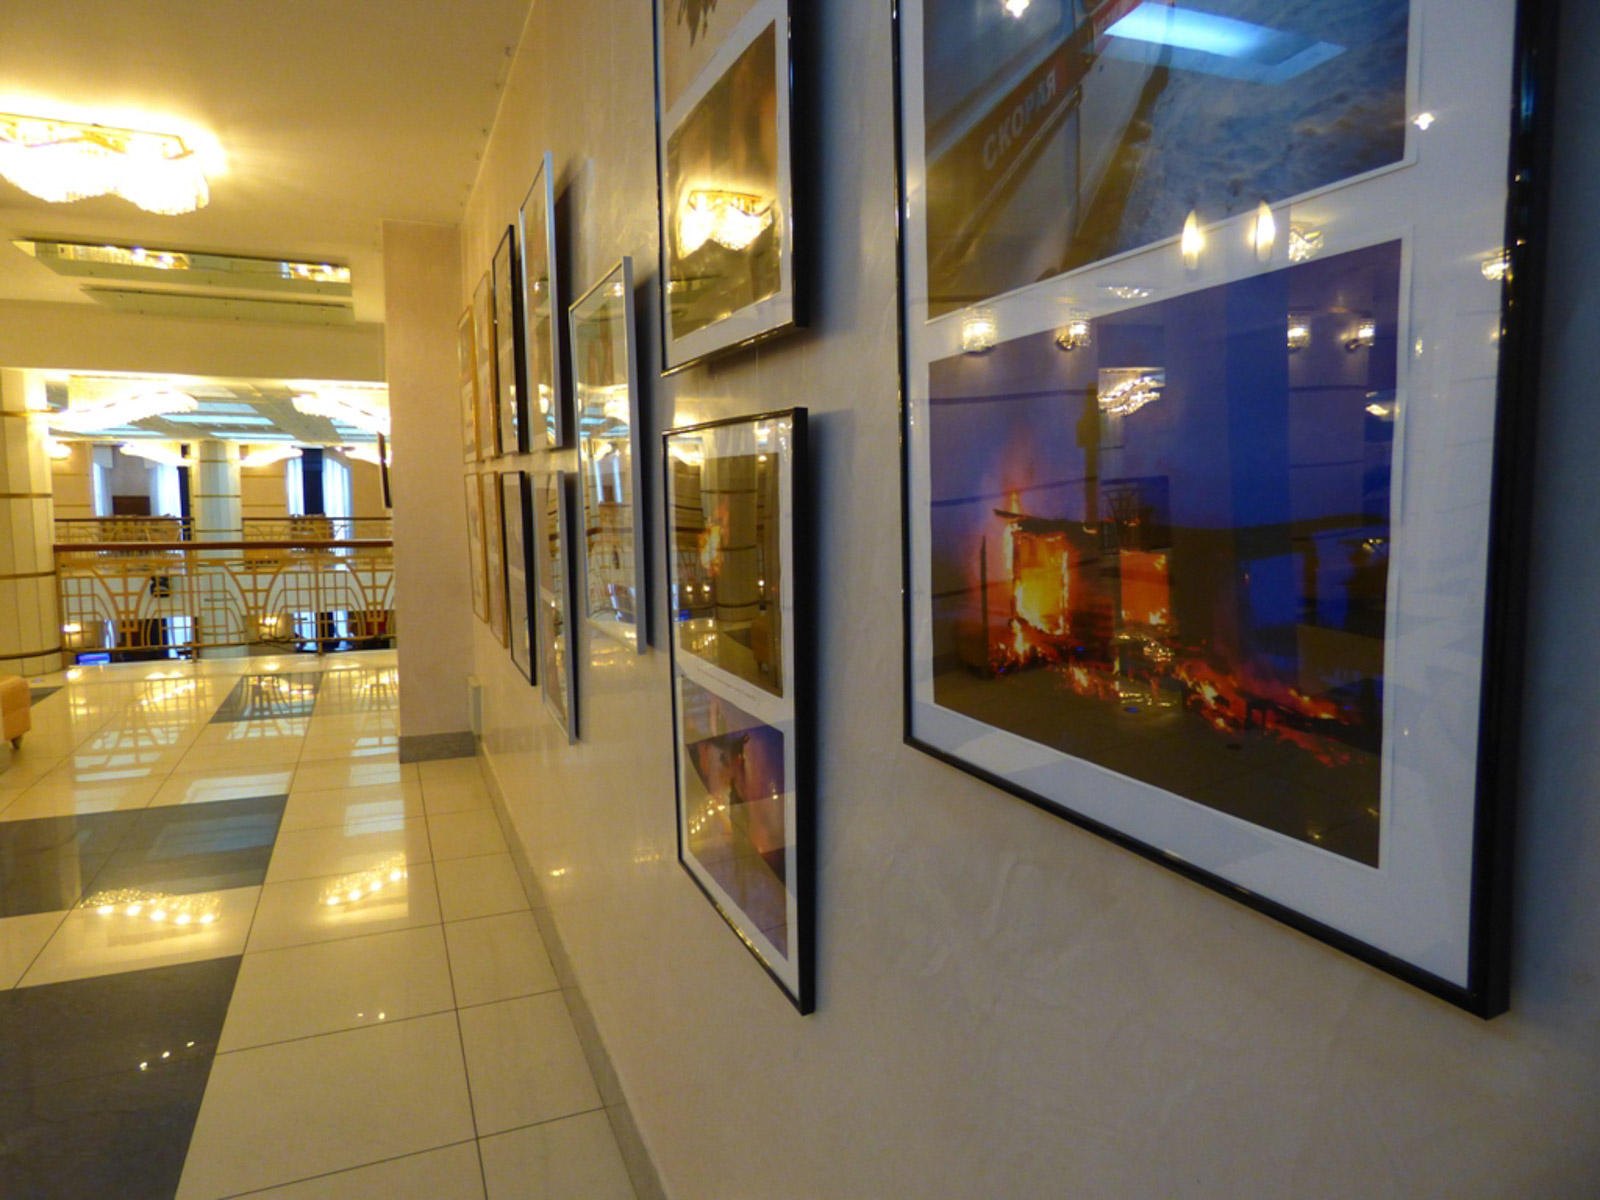 В Кемерово открылся выставочный фотопроект «Во имя добра и гуманизма» КемГИК, реализуемый в рамках проекта «Гражданский подвиг»